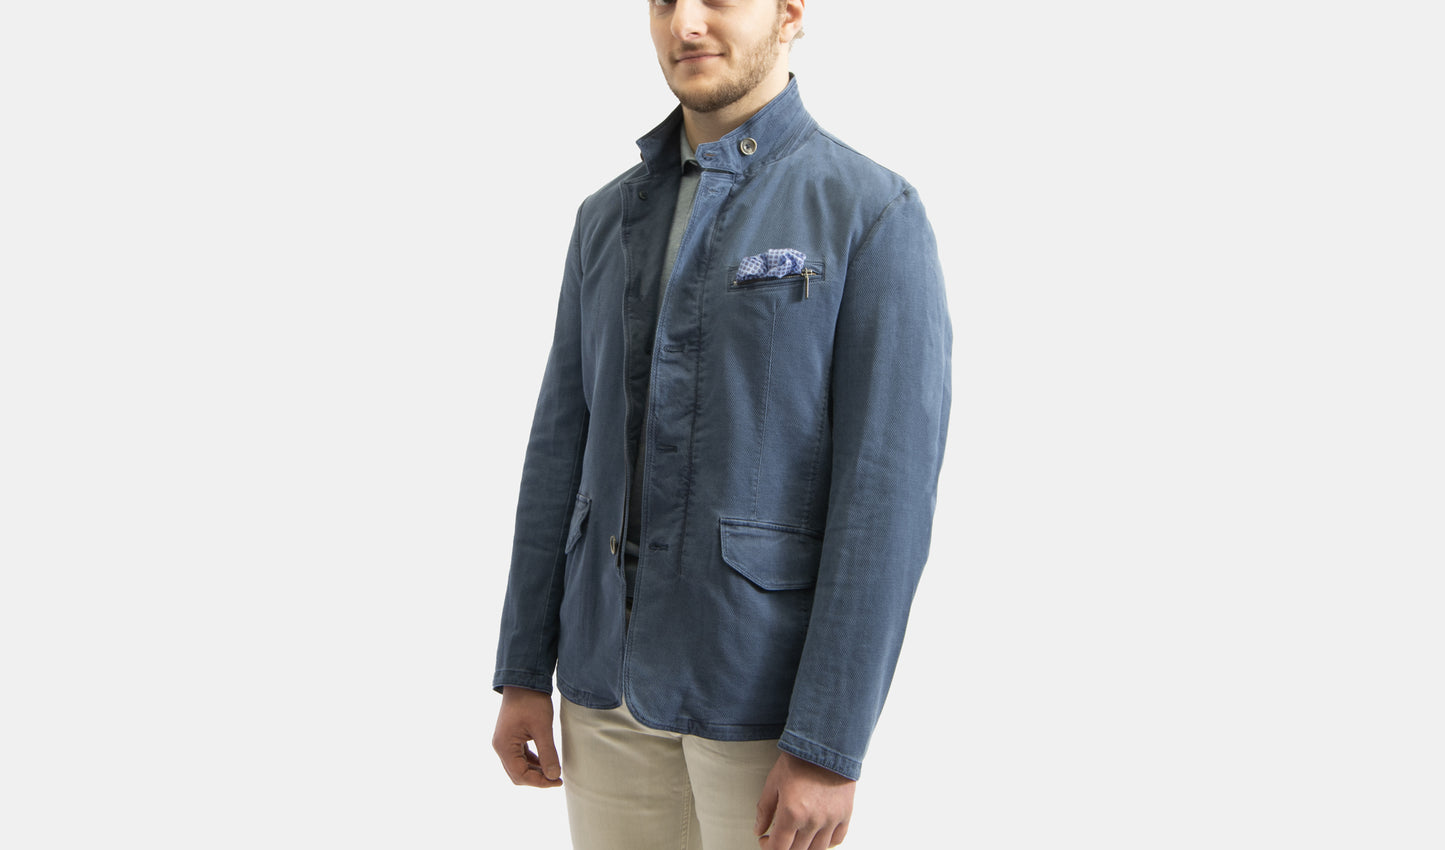 khakis of Carmel - blue jacket